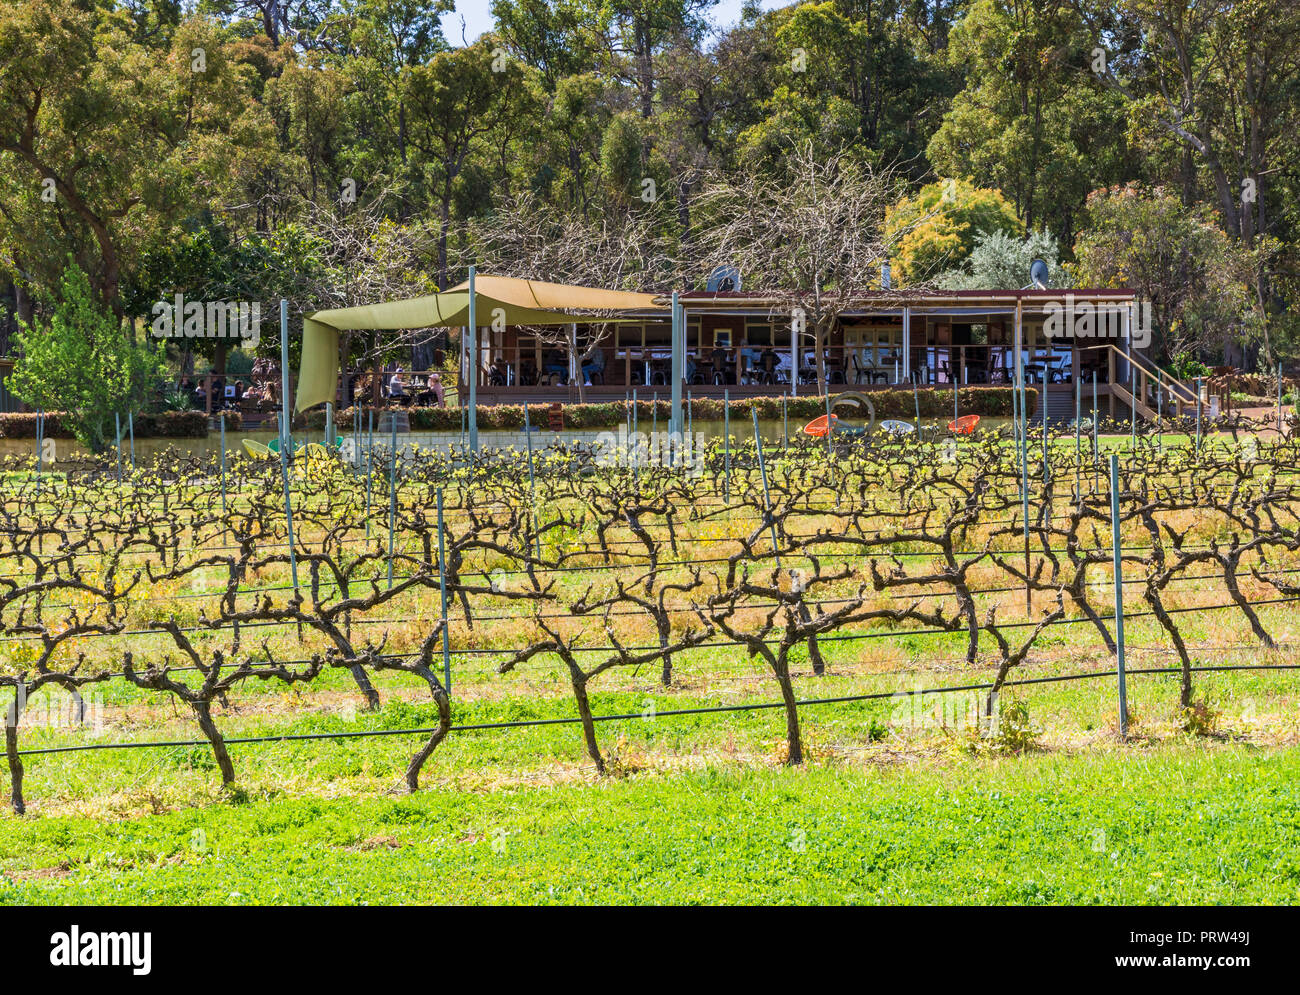 Primavera de vides en el Viñedo Hainault y cafetería en el valle Bickley, Australia Occidental Foto de stock